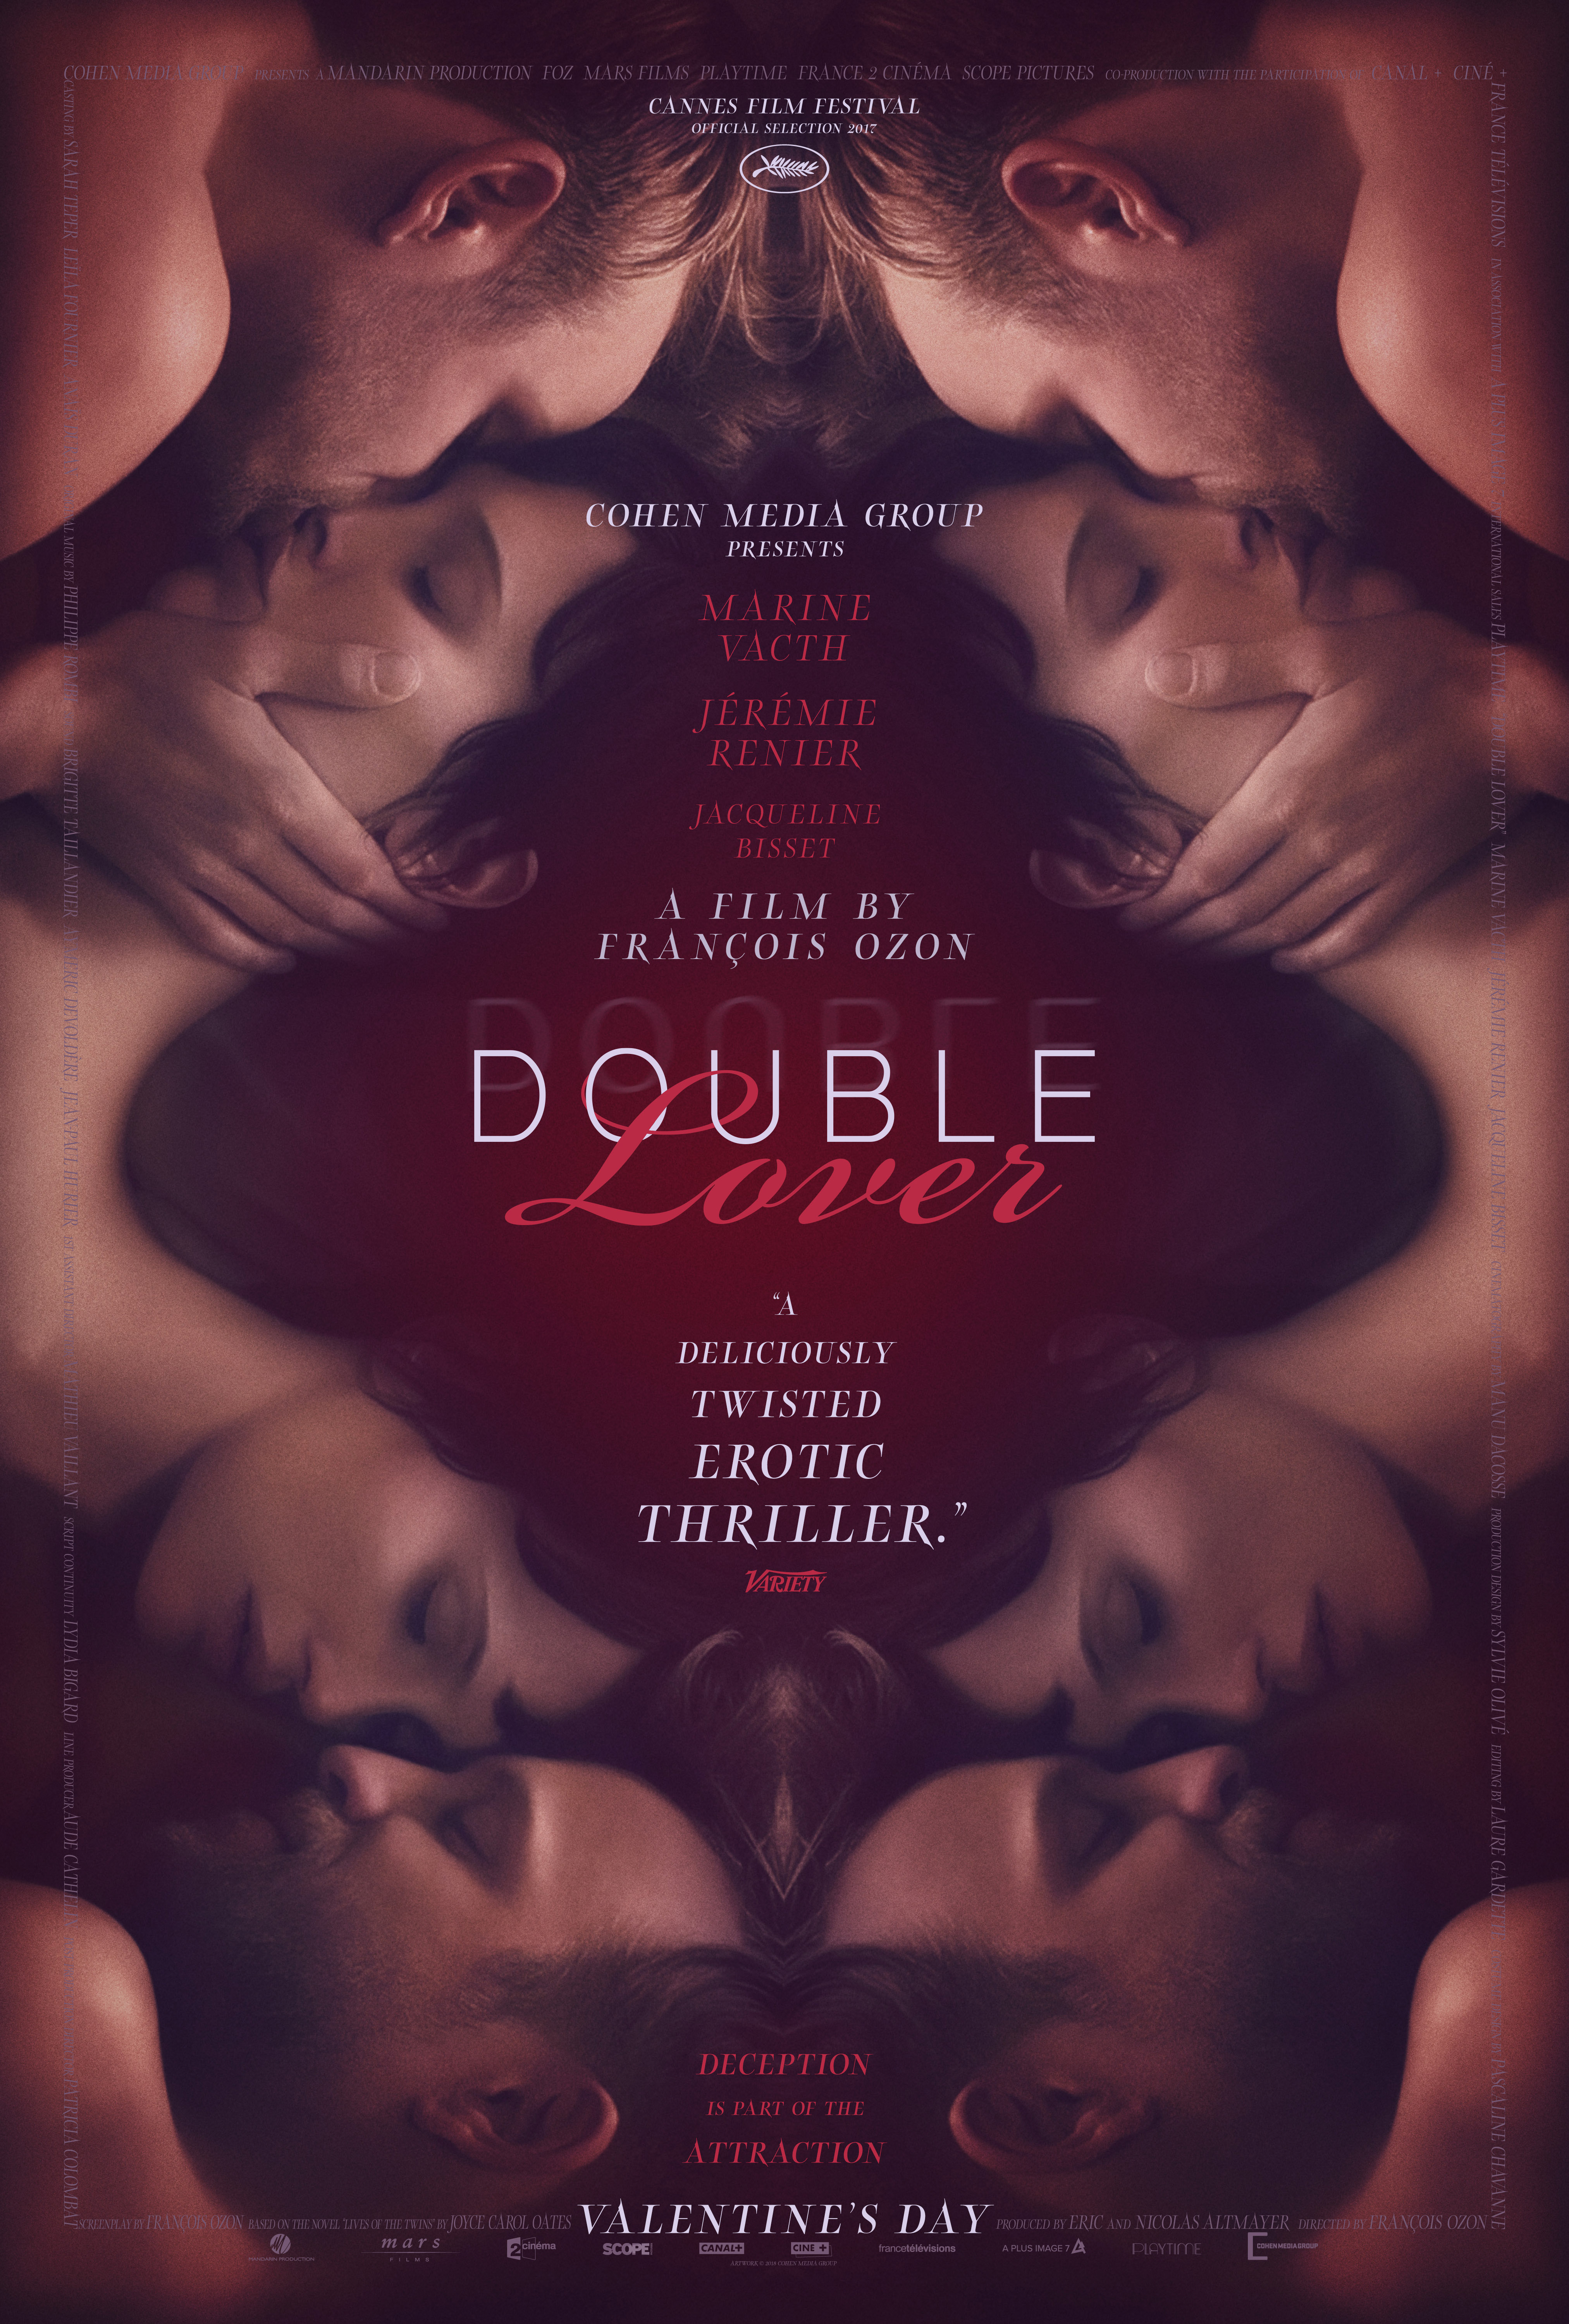 Nonton film Double Lover layarkaca21 indoxx1 ganool online streaming terbaru